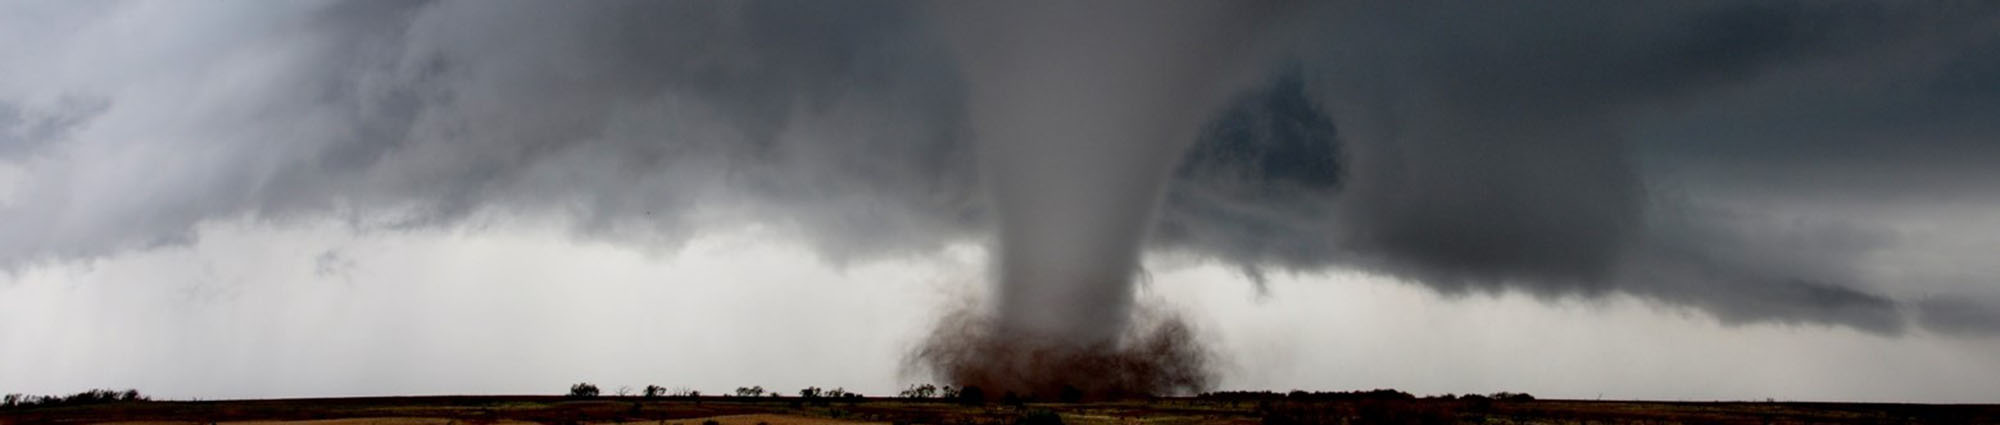 Image of a tornado.